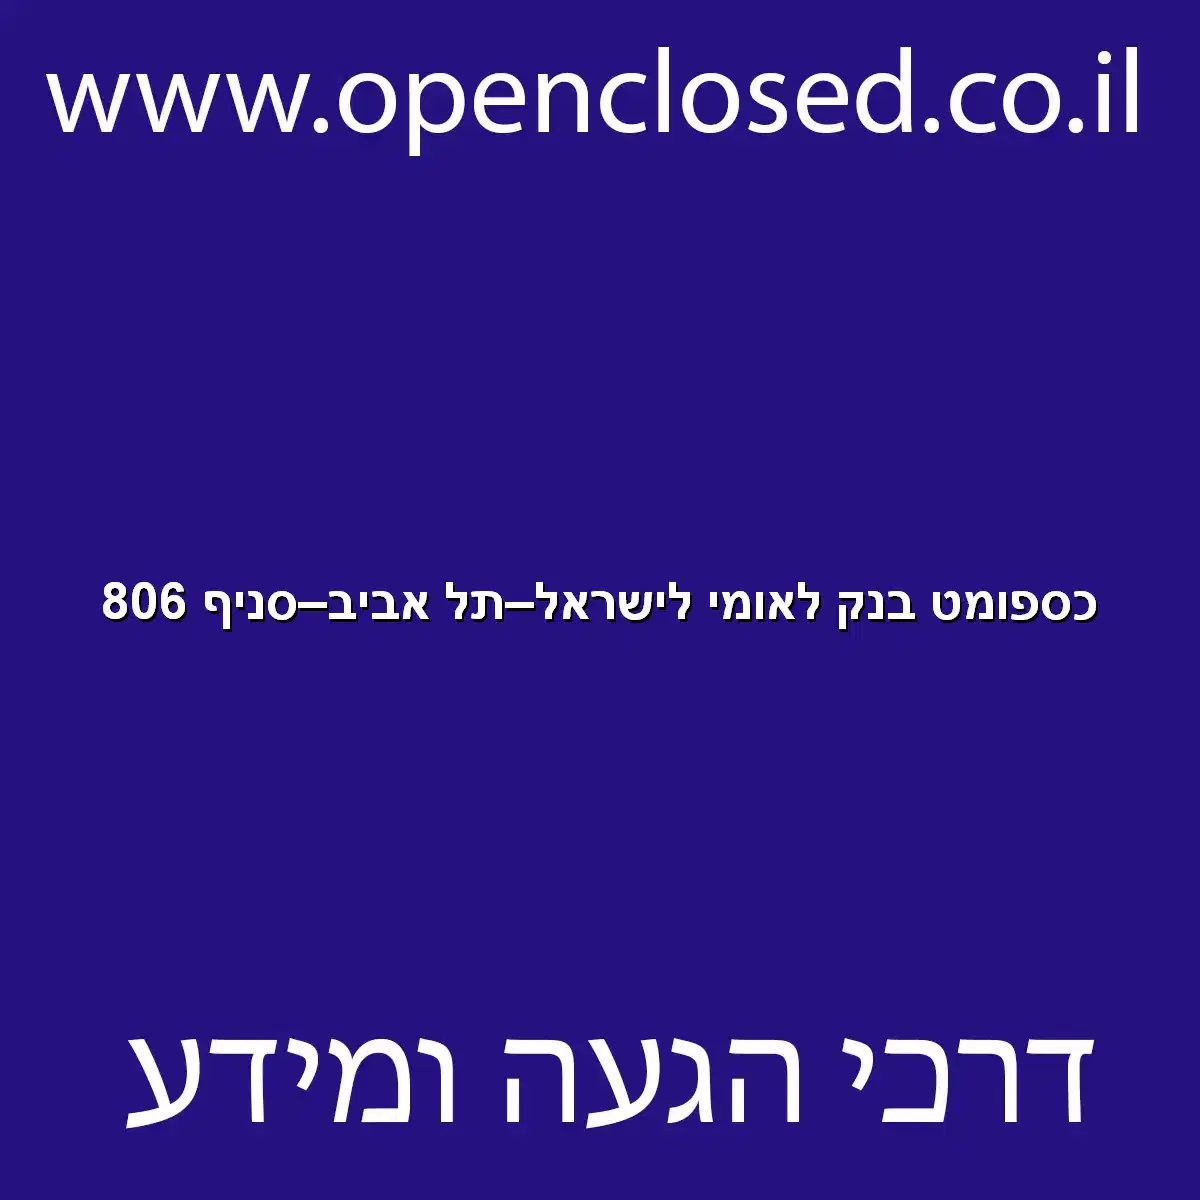 כספומט בנק לאומי לישראל תל אביב סניף 806